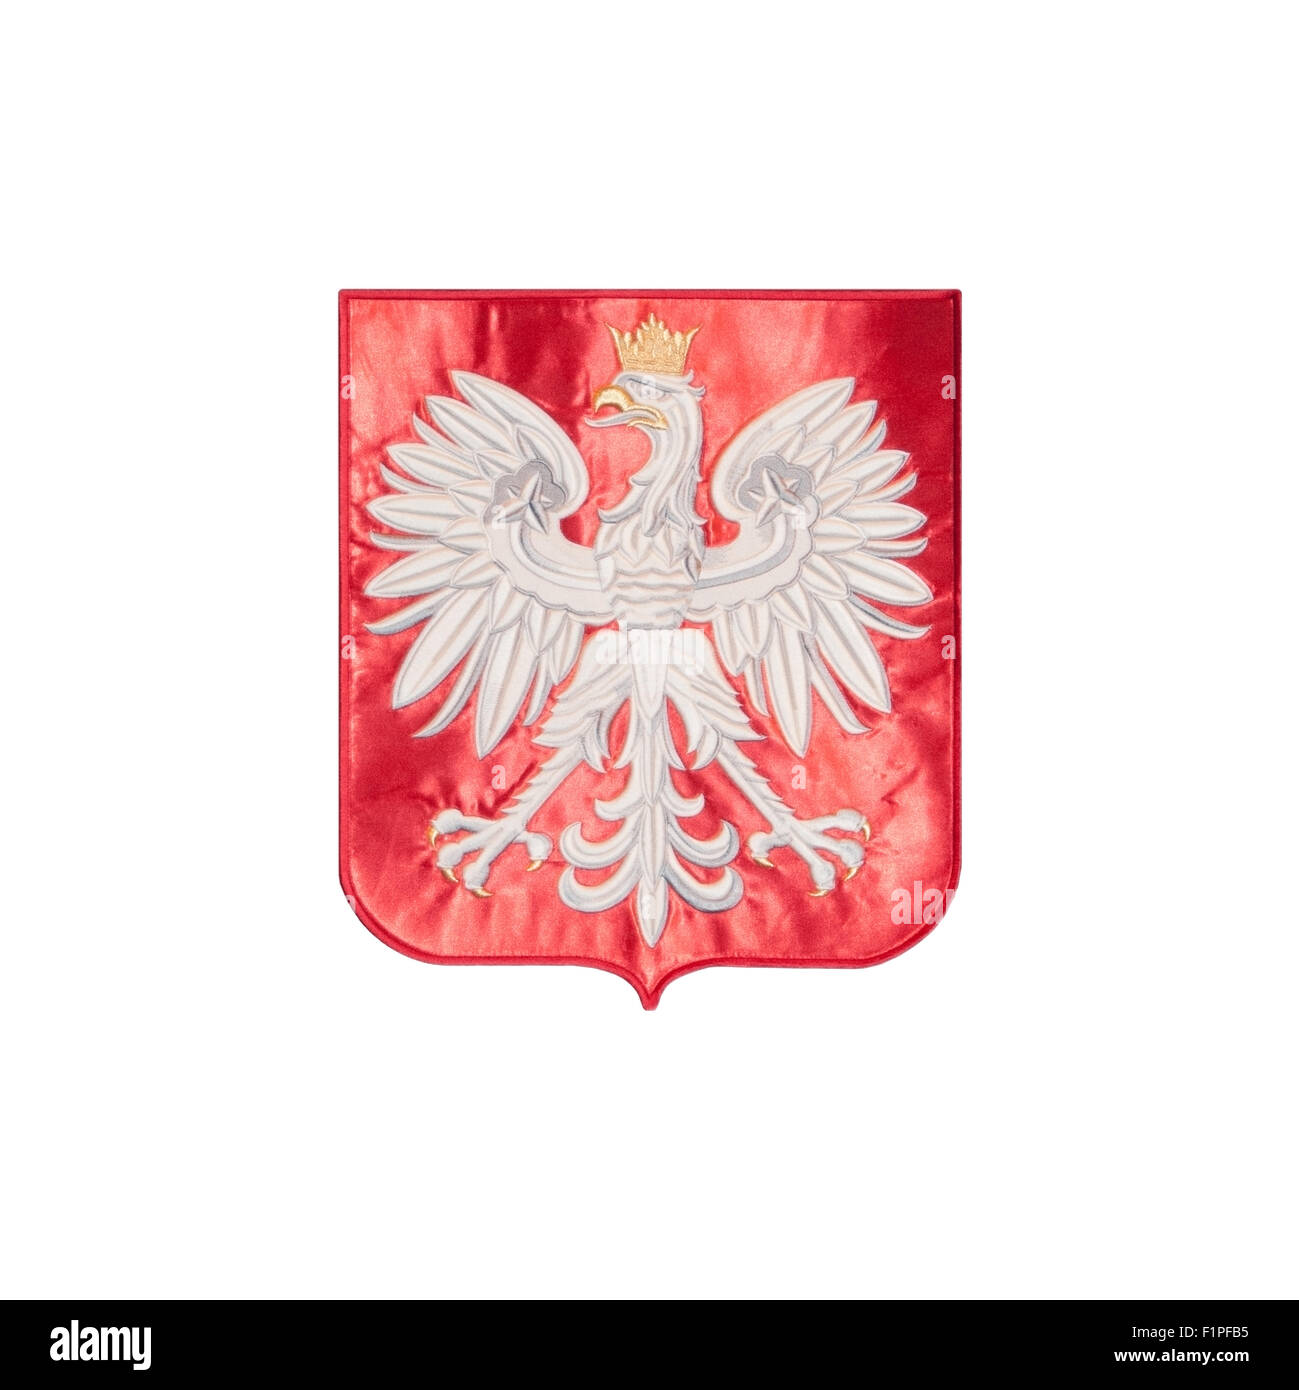 Emblema, el águila polaca con una corona amarilla, bordado sobre una tela de terciopelo rojo, Polska, Polaco, Europea, UE Foto de stock